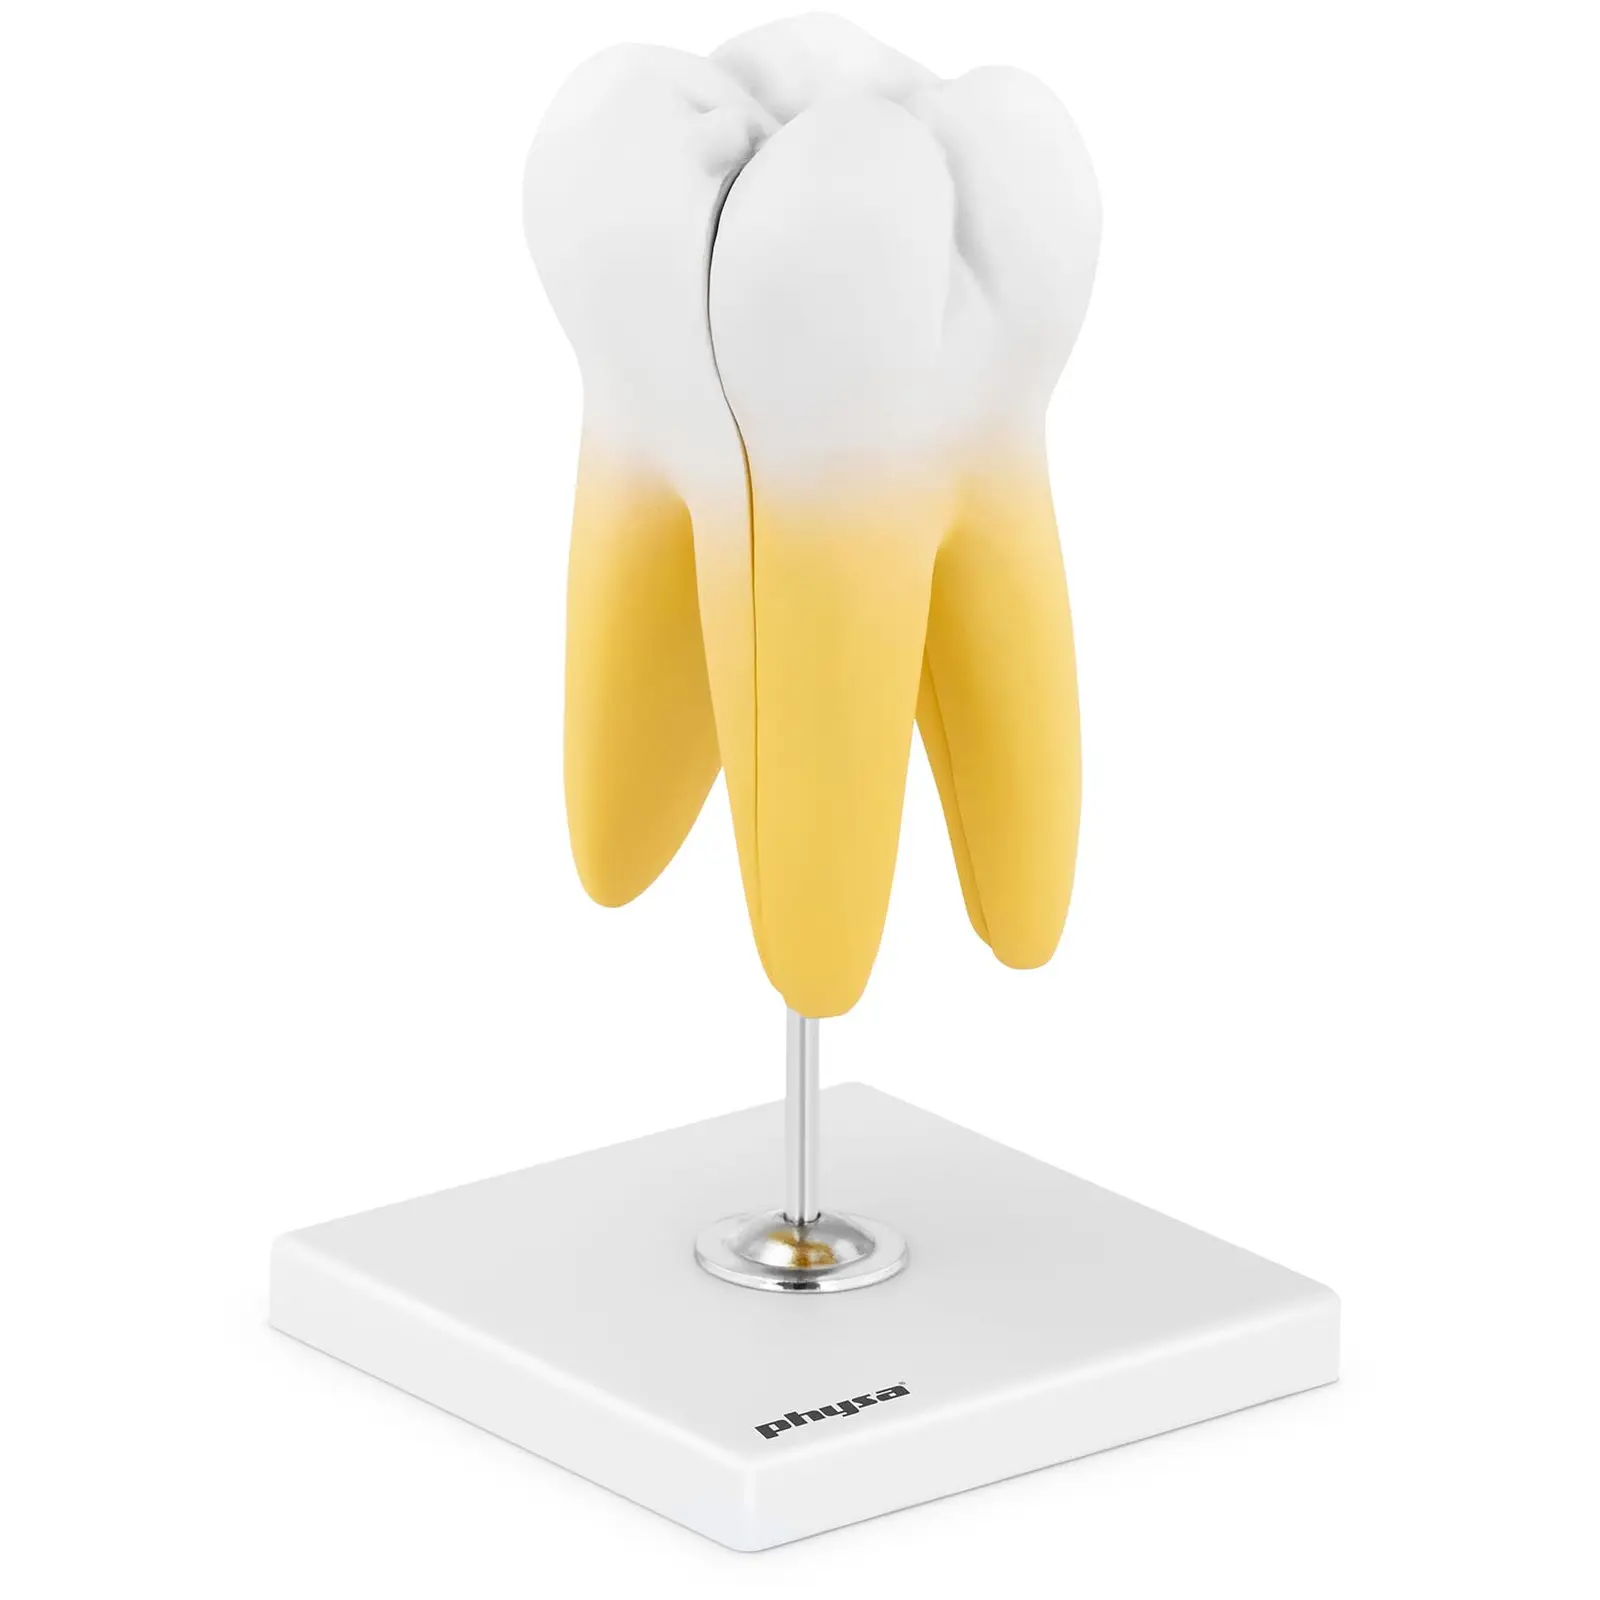 Modelo dental - molar con dos raíces - 2 piezas